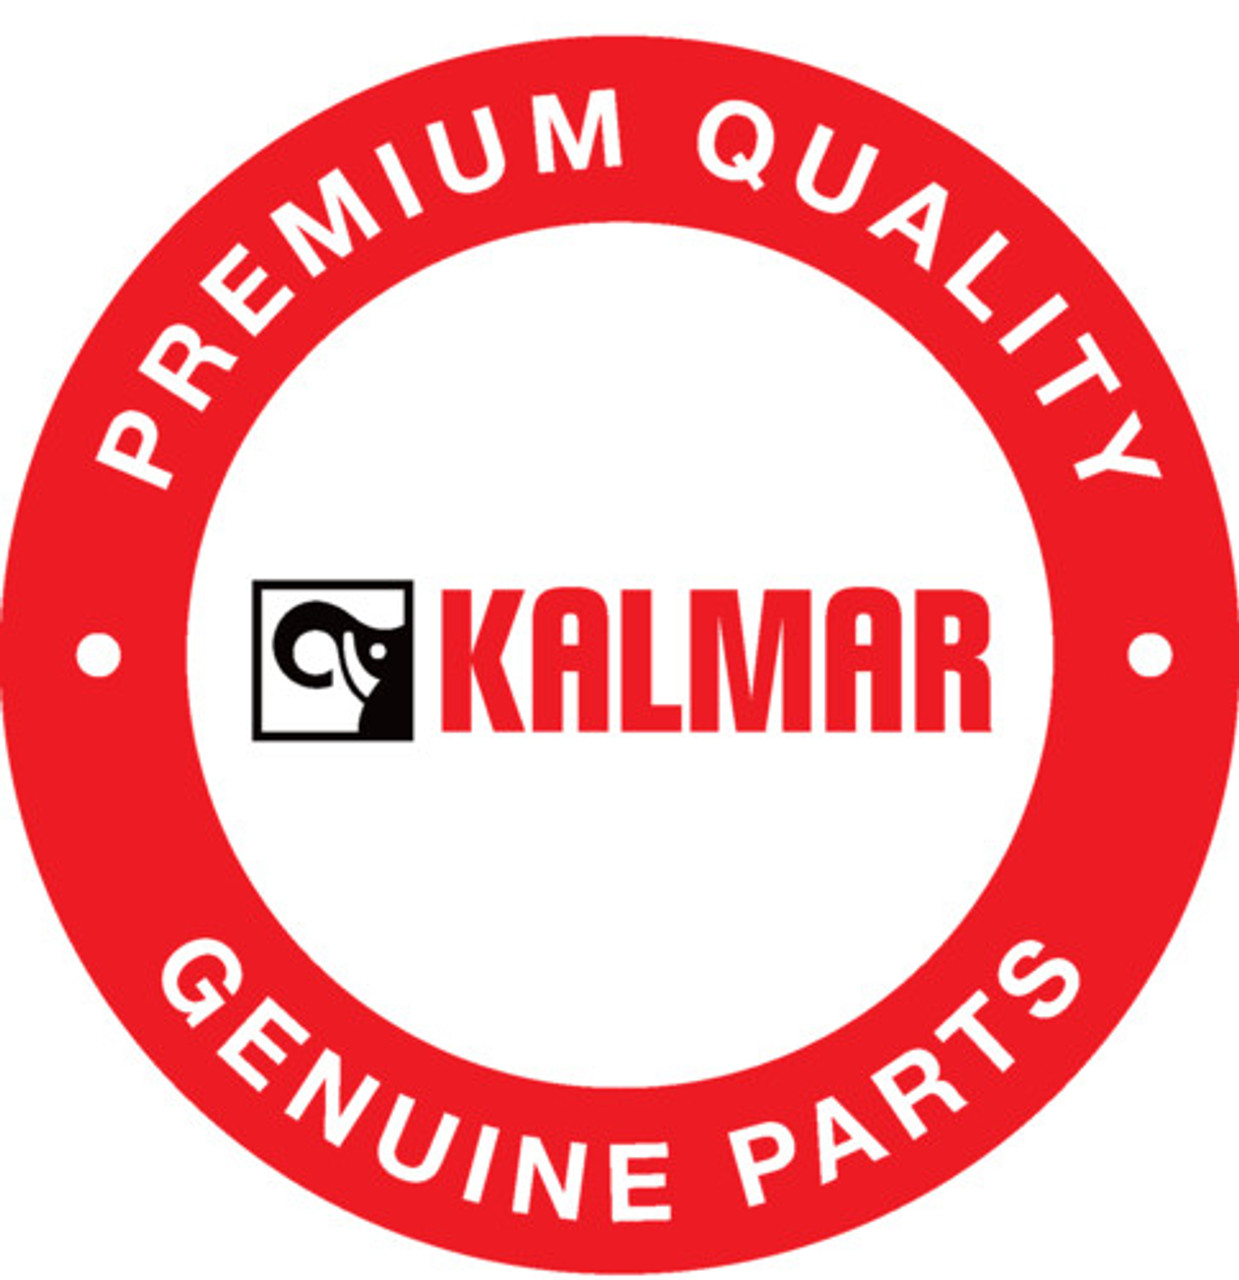 J01397.0100: Kalmar® Printed Circuit Card